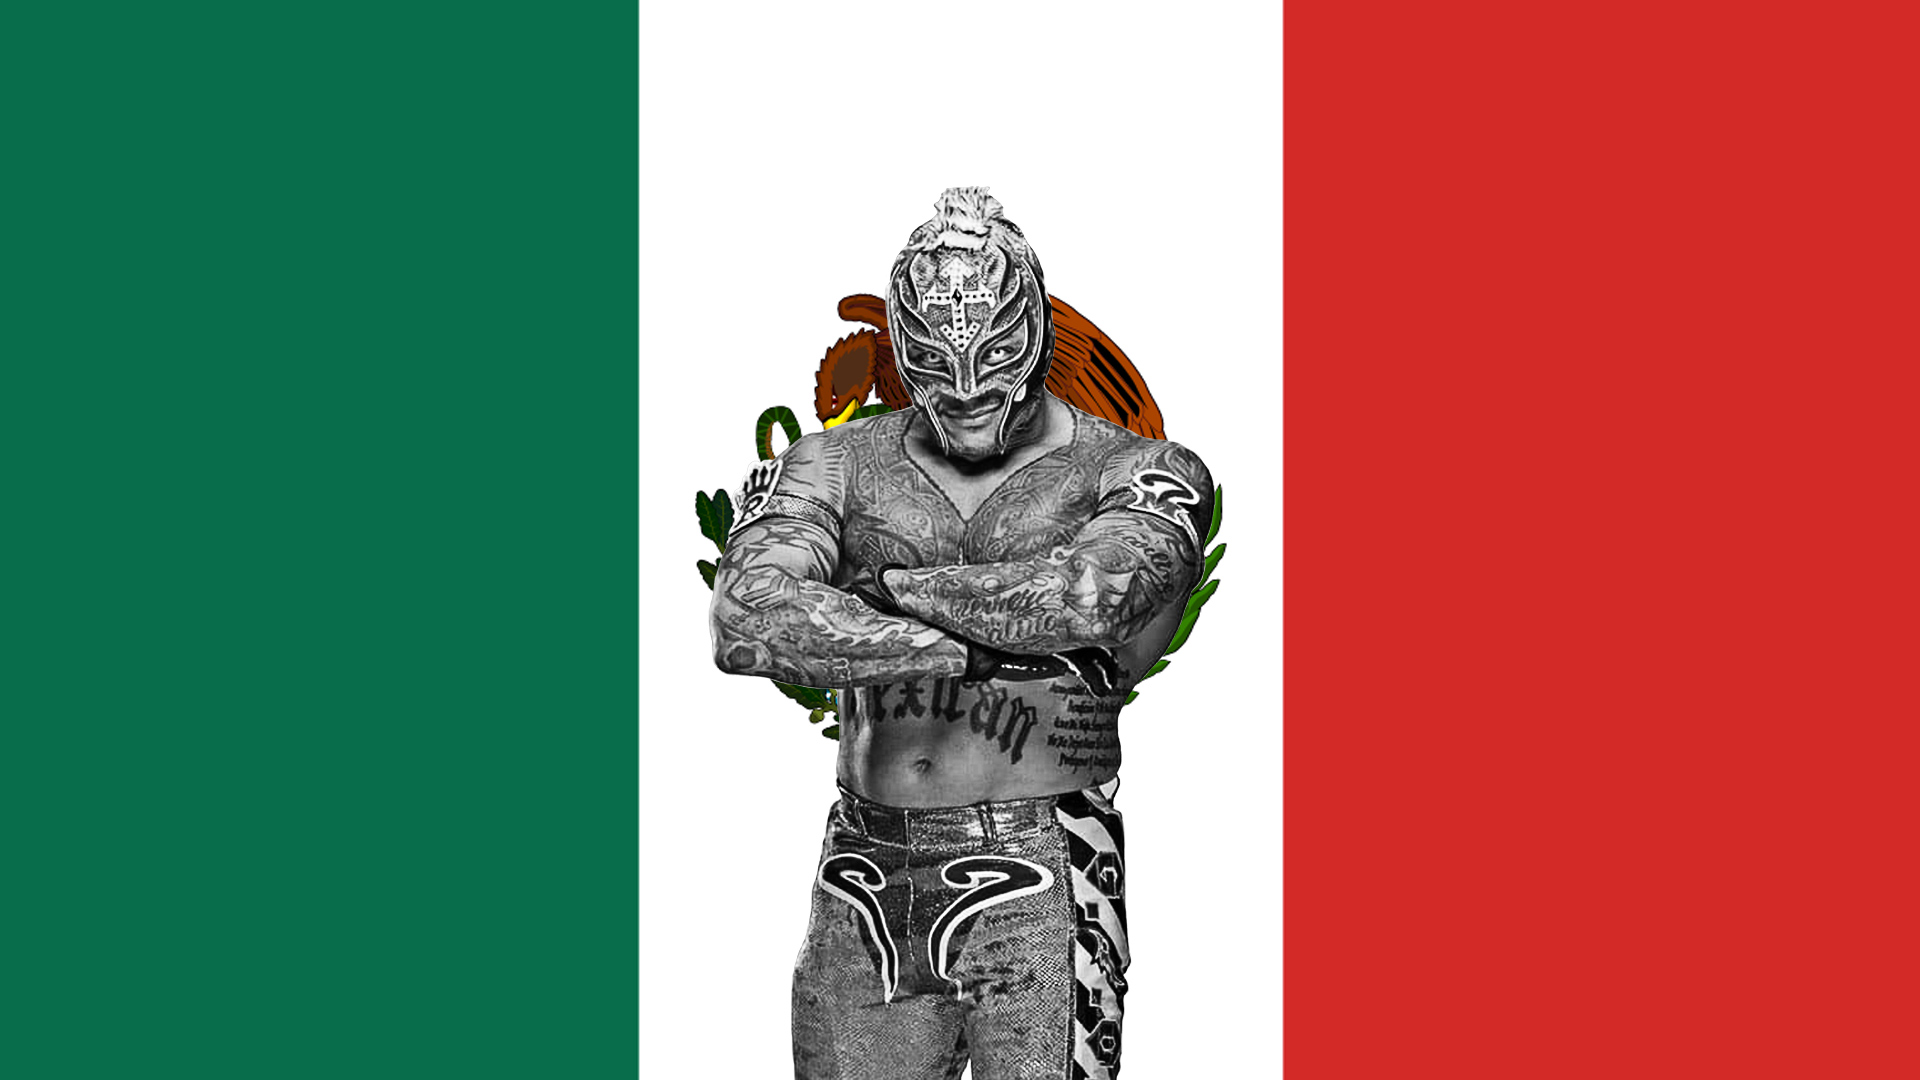 La WWE cerca partner, nel mirino Messico e Puerto Rico